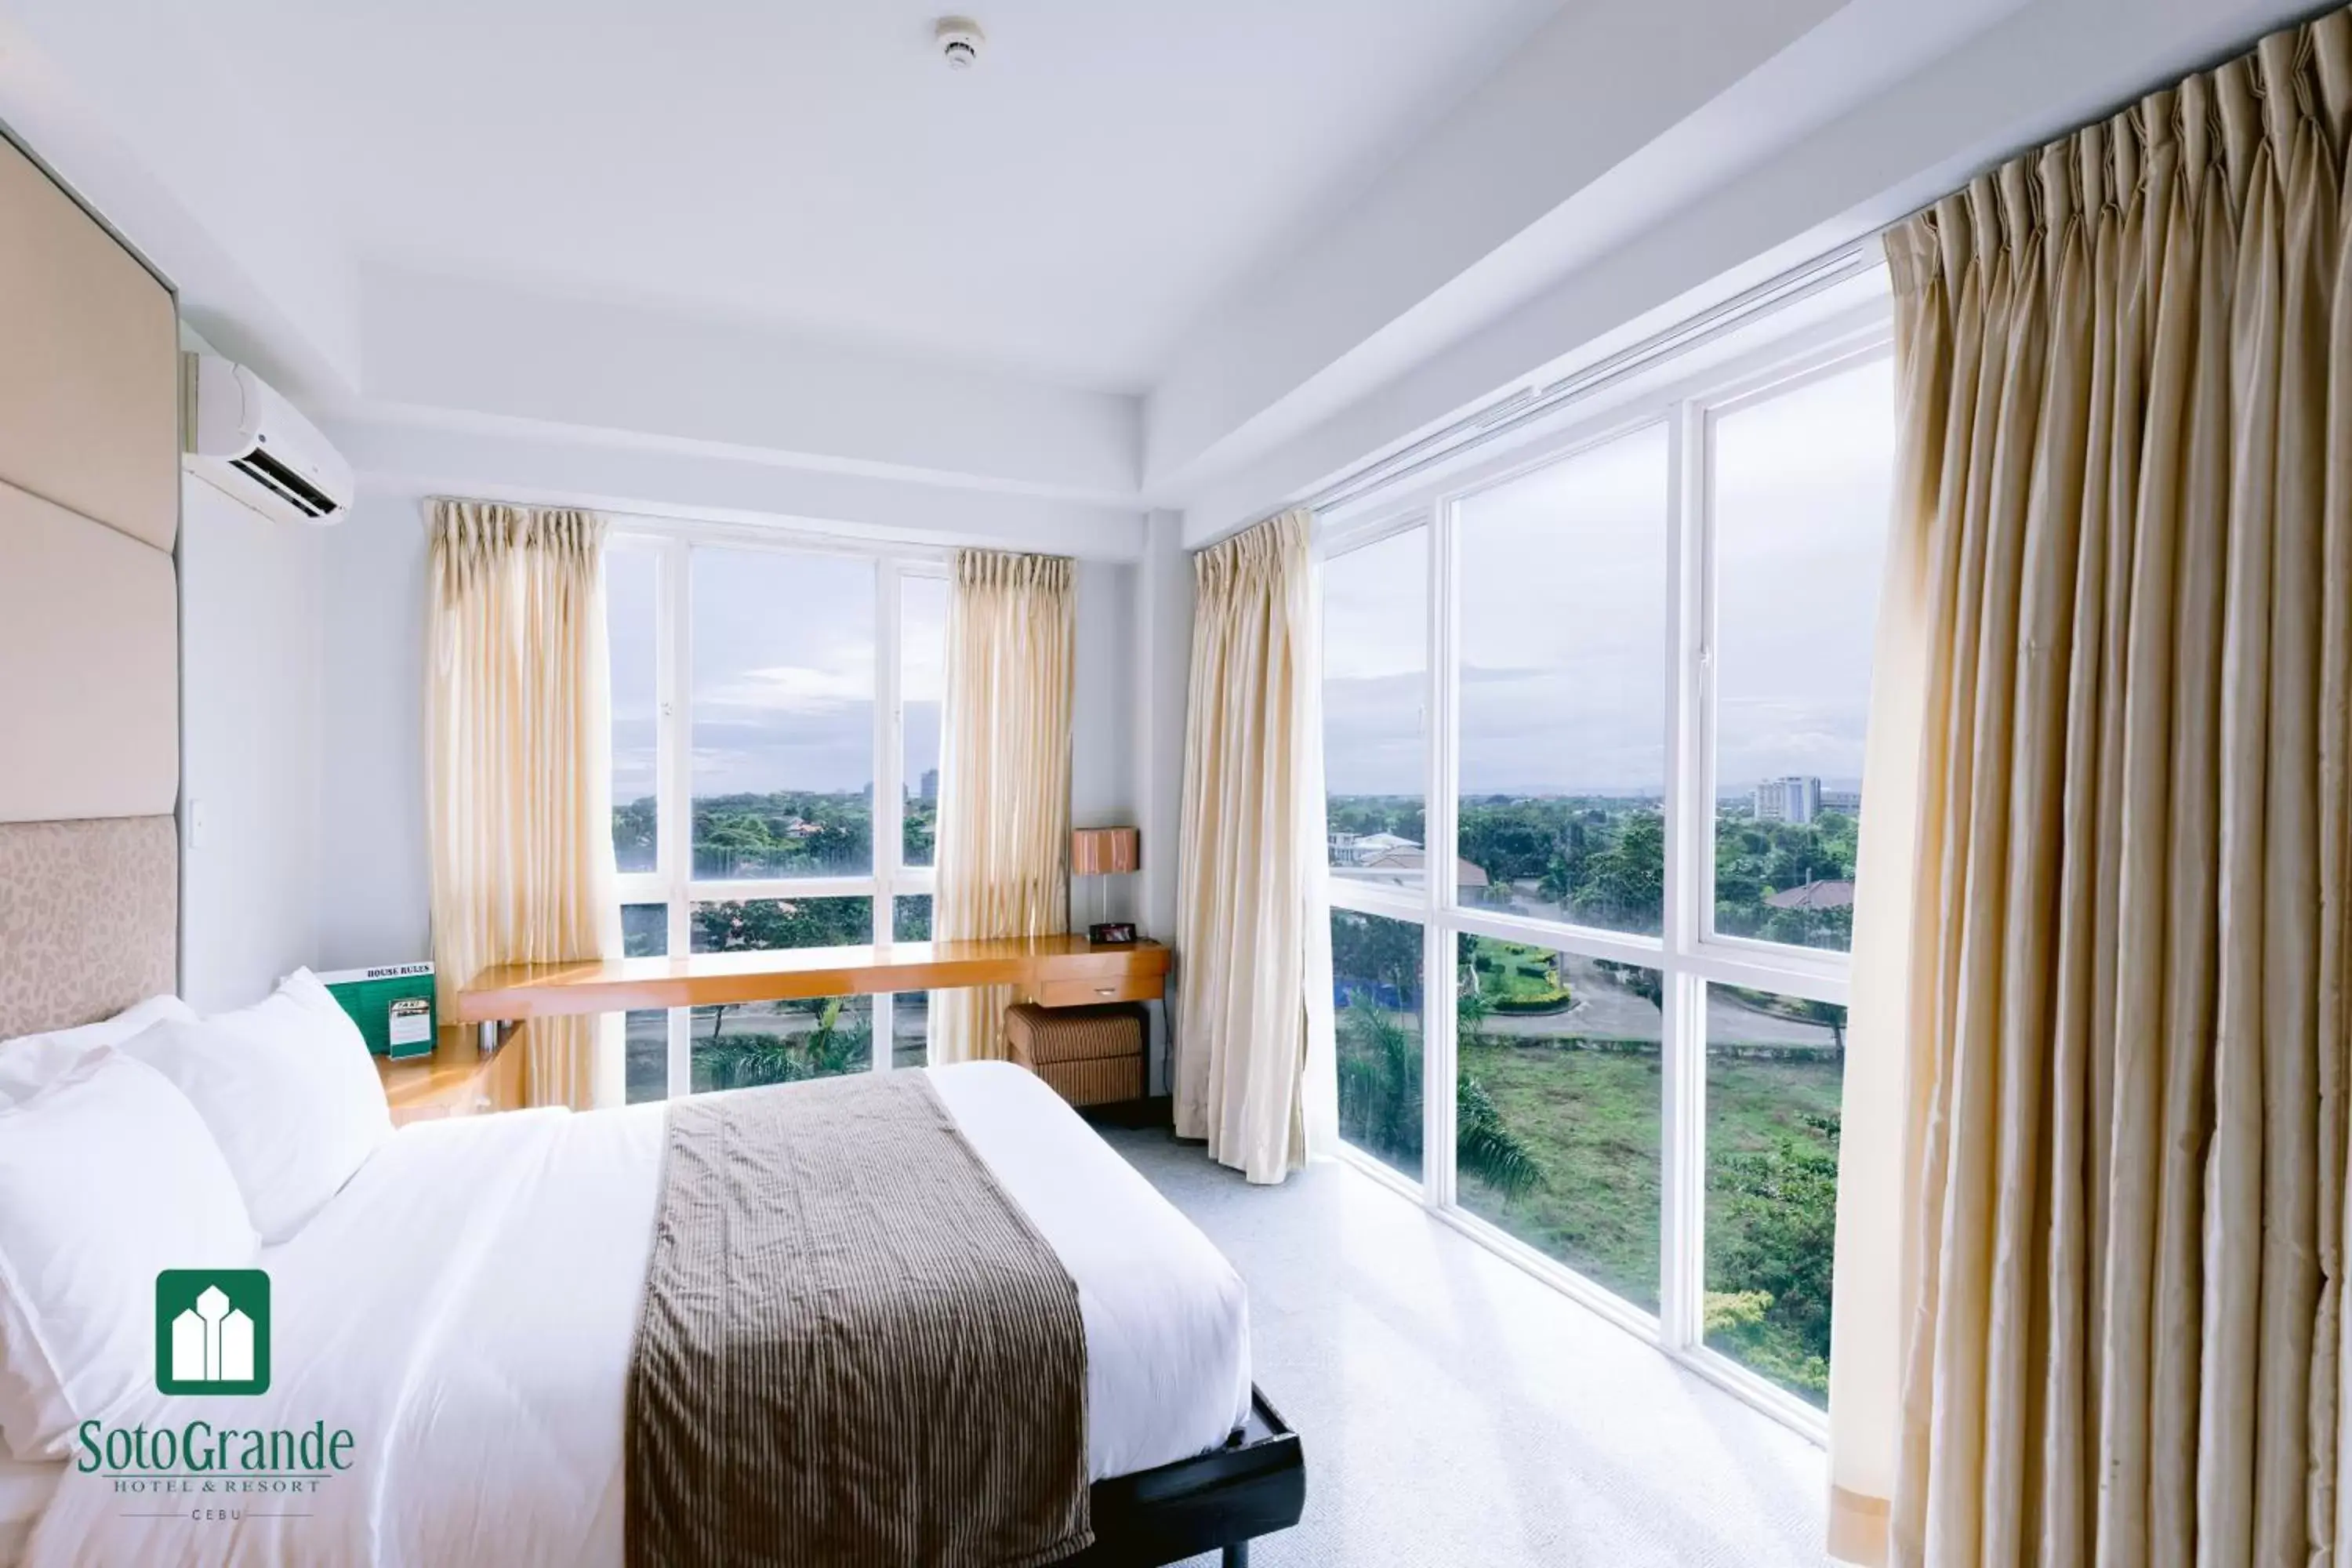 Bedroom in Sotogrande Hotel and Resort